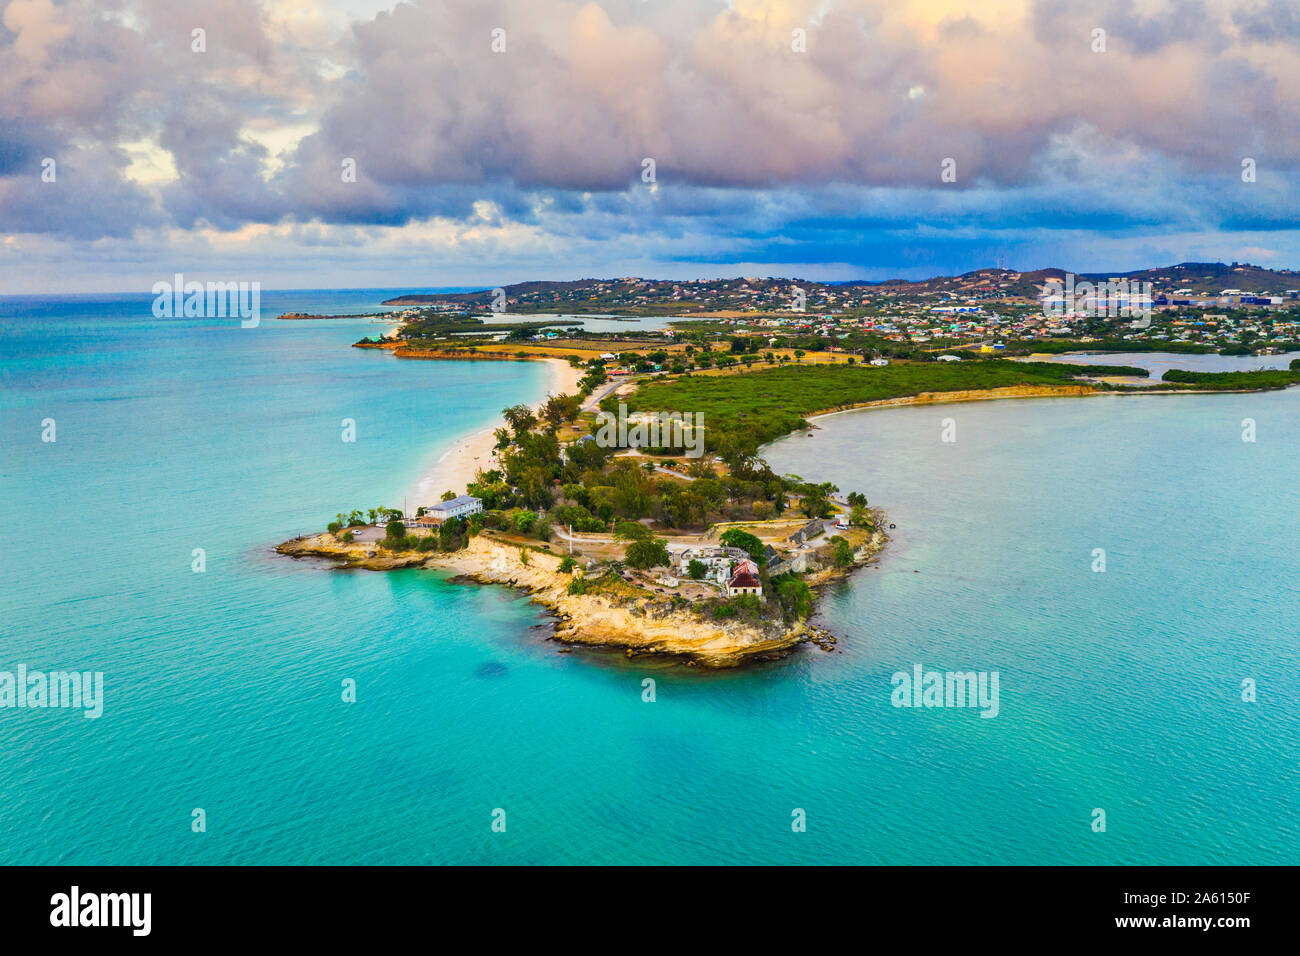 Vue aérienne par drone de Fort James entouré par la mer des caraïbes, St John's, Antigua, Iles sous le vent, Antilles, Caraïbes, Amérique Centrale Banque D'Images